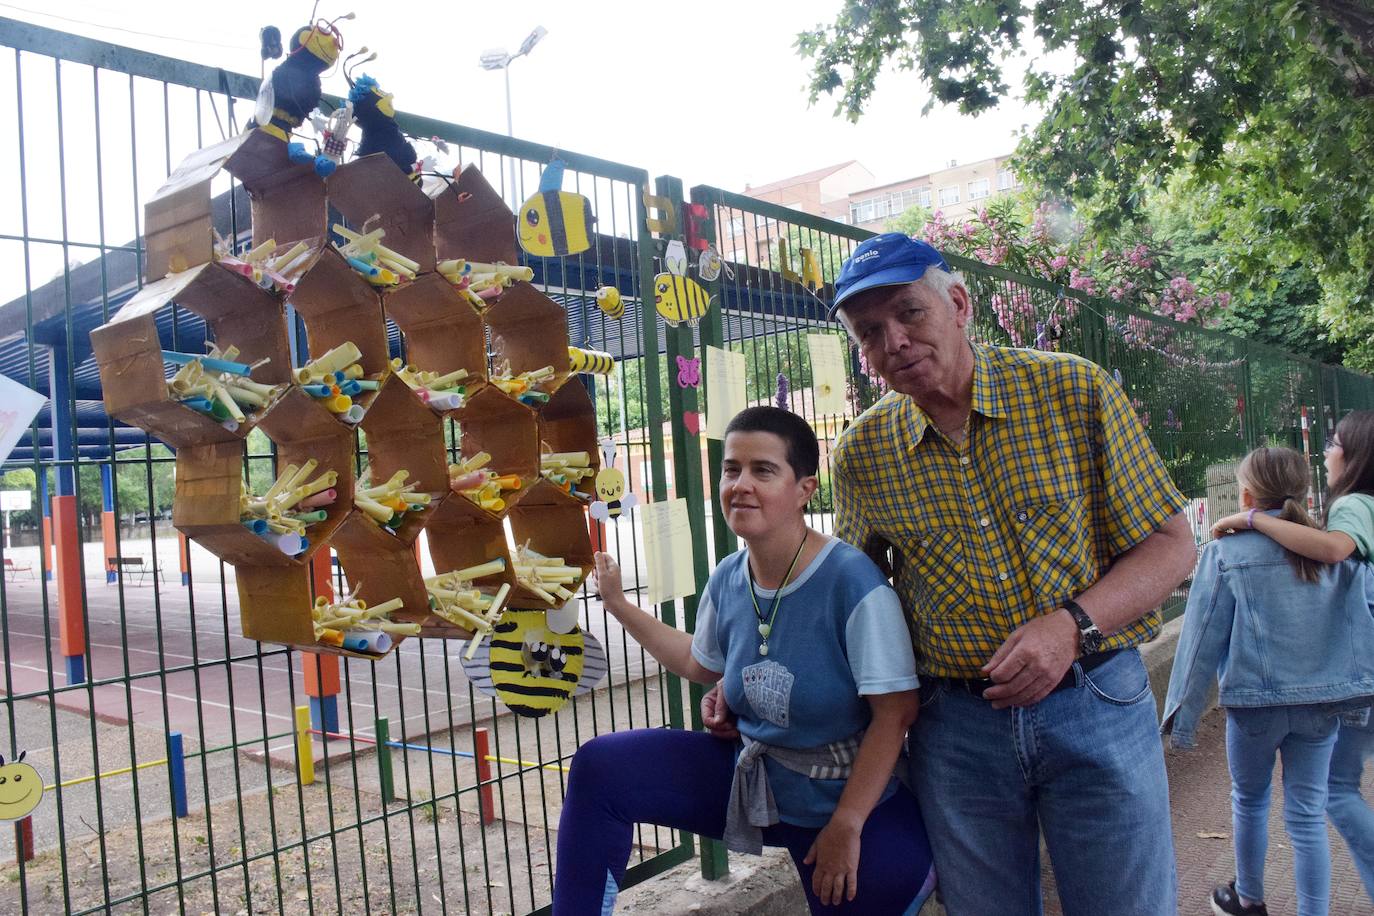 Fotos: El barrio logroñés de Madre de Dios disfruta de sus fiestas dos años después